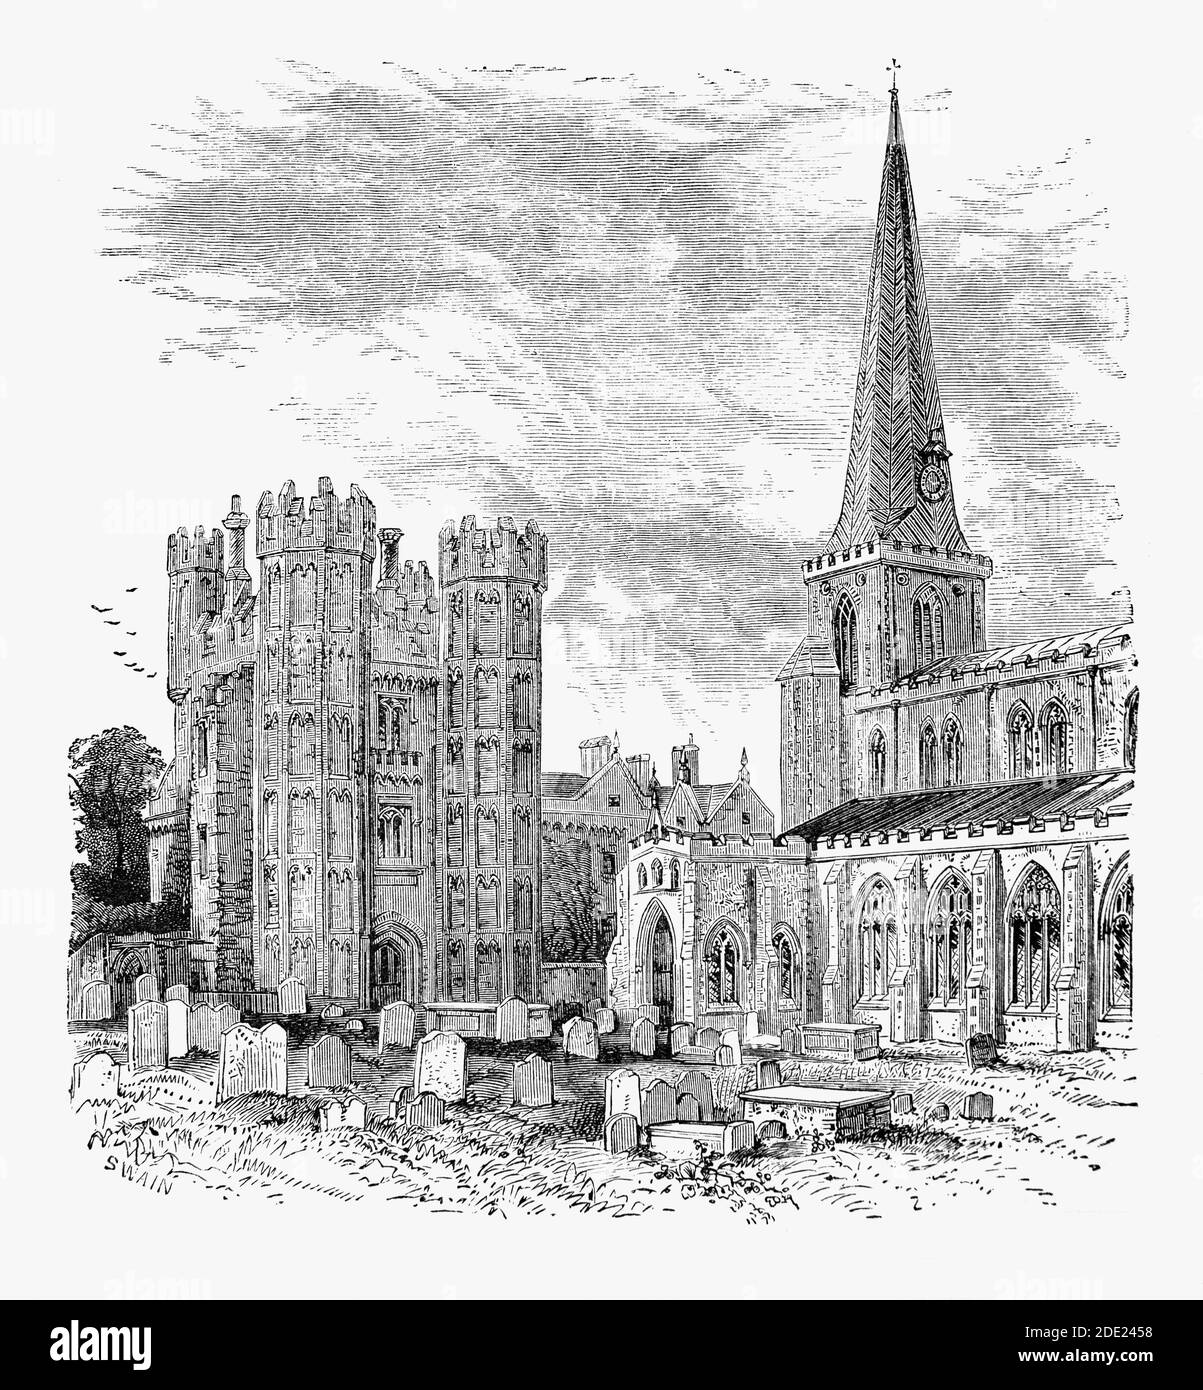 Eine Ansicht des 19. Jahrhunderts der St Mary’s Anglican Kirche in Hadleigh, Suffolk. Die Kirche hat einen Turm und Gänge aus dem 14. Jahrhundert, wurde aber im 15. Jahrhundert überarbeitet und im 19. Und 20. Jahrhundert umfassend restauriert. Rowland Taylor (1510–55) war Rektor, bis er 1553 nur sechs Tage nach der Thronbesteigung der neuen Königin Maria I. verhaftet wurde. Abgesehen von der Tatsache, dass Taylor unterstützt hatte Lady Jane Gray, Mary's Rivale, wurde er auch mit Ketzerei für die Denuncing der römisch-katholischen Praxis der klerikalen Zölibat. Er wurde auf dem Scheiterhaufen des nahegelegenen Aldham Common verbrannt. Stockfoto